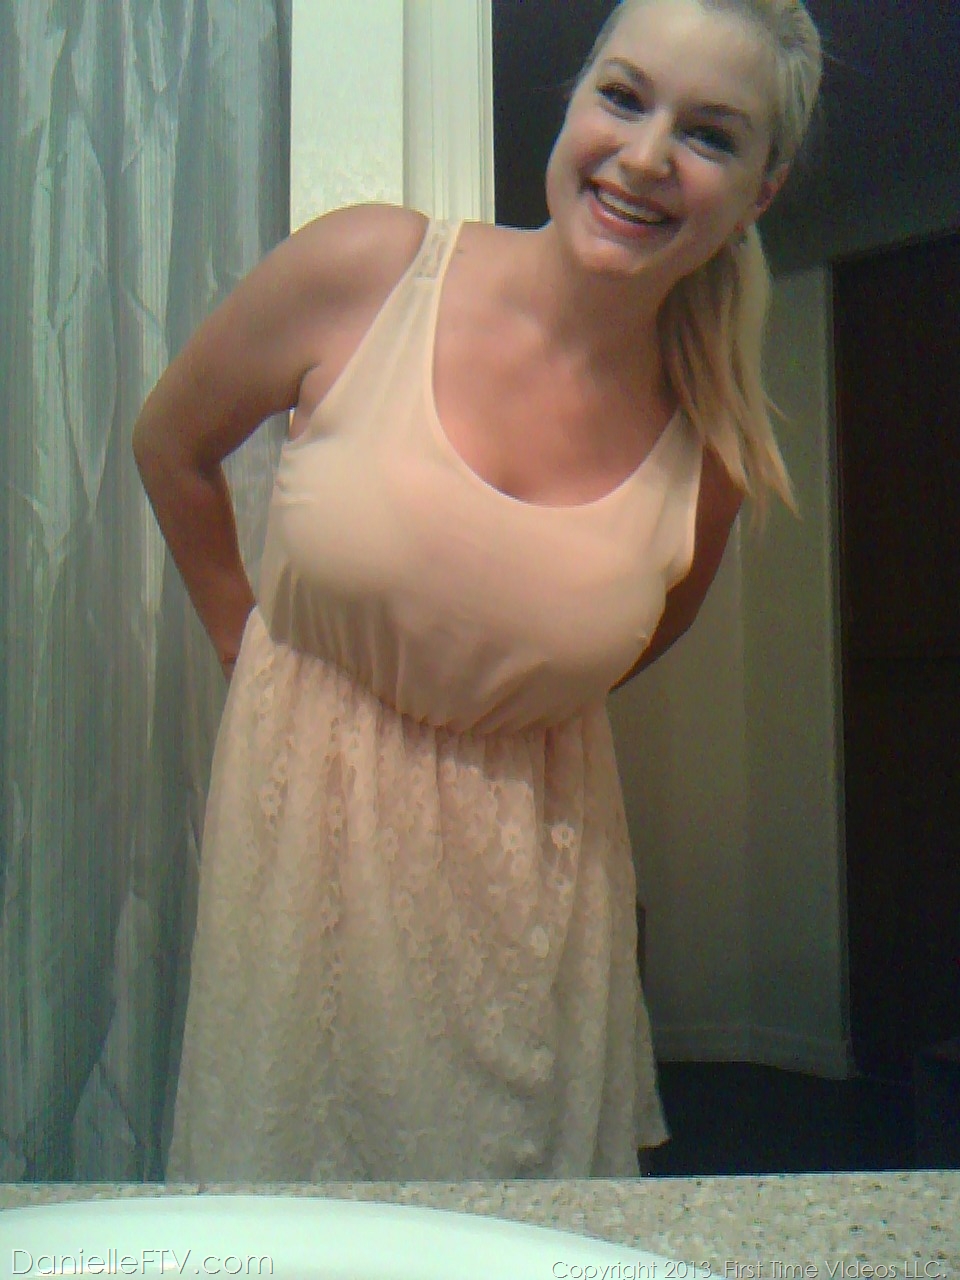 Blonde amateur Danielle Ftv dons numerous outfits for non nude selfies 色情照片 #422634173 | Danielle FTV Pics, Danielle Delaunay, Selfie, 手机色情